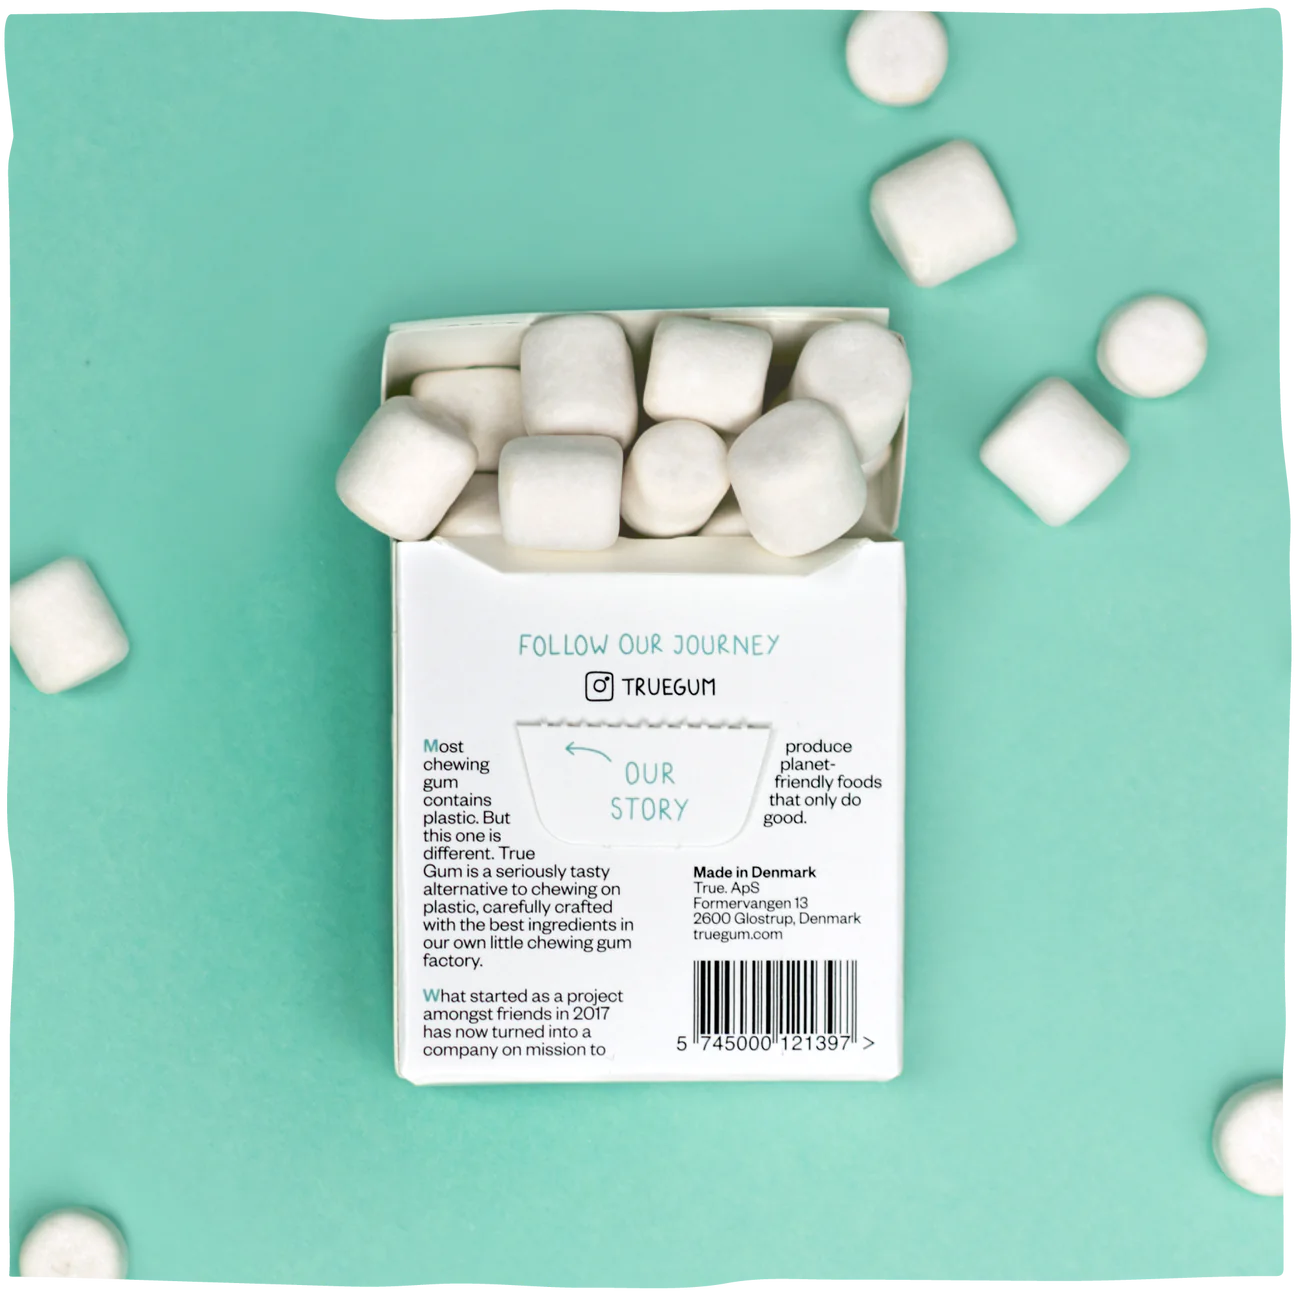 White Peppermint Gum 21g